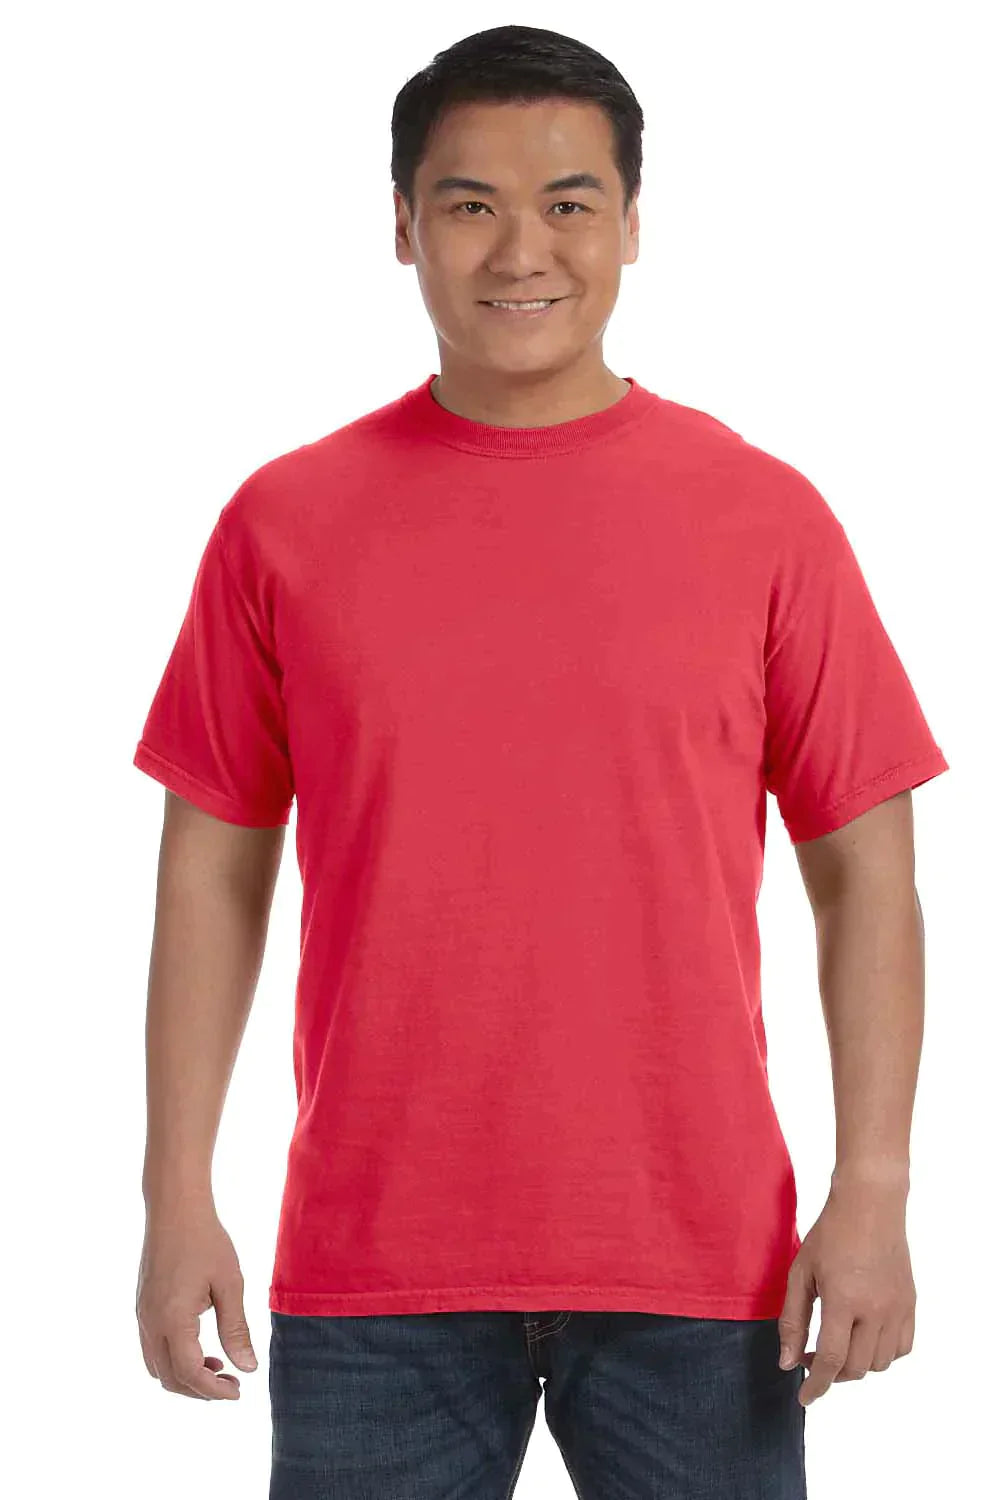 Sample GLITTER T-Shirt